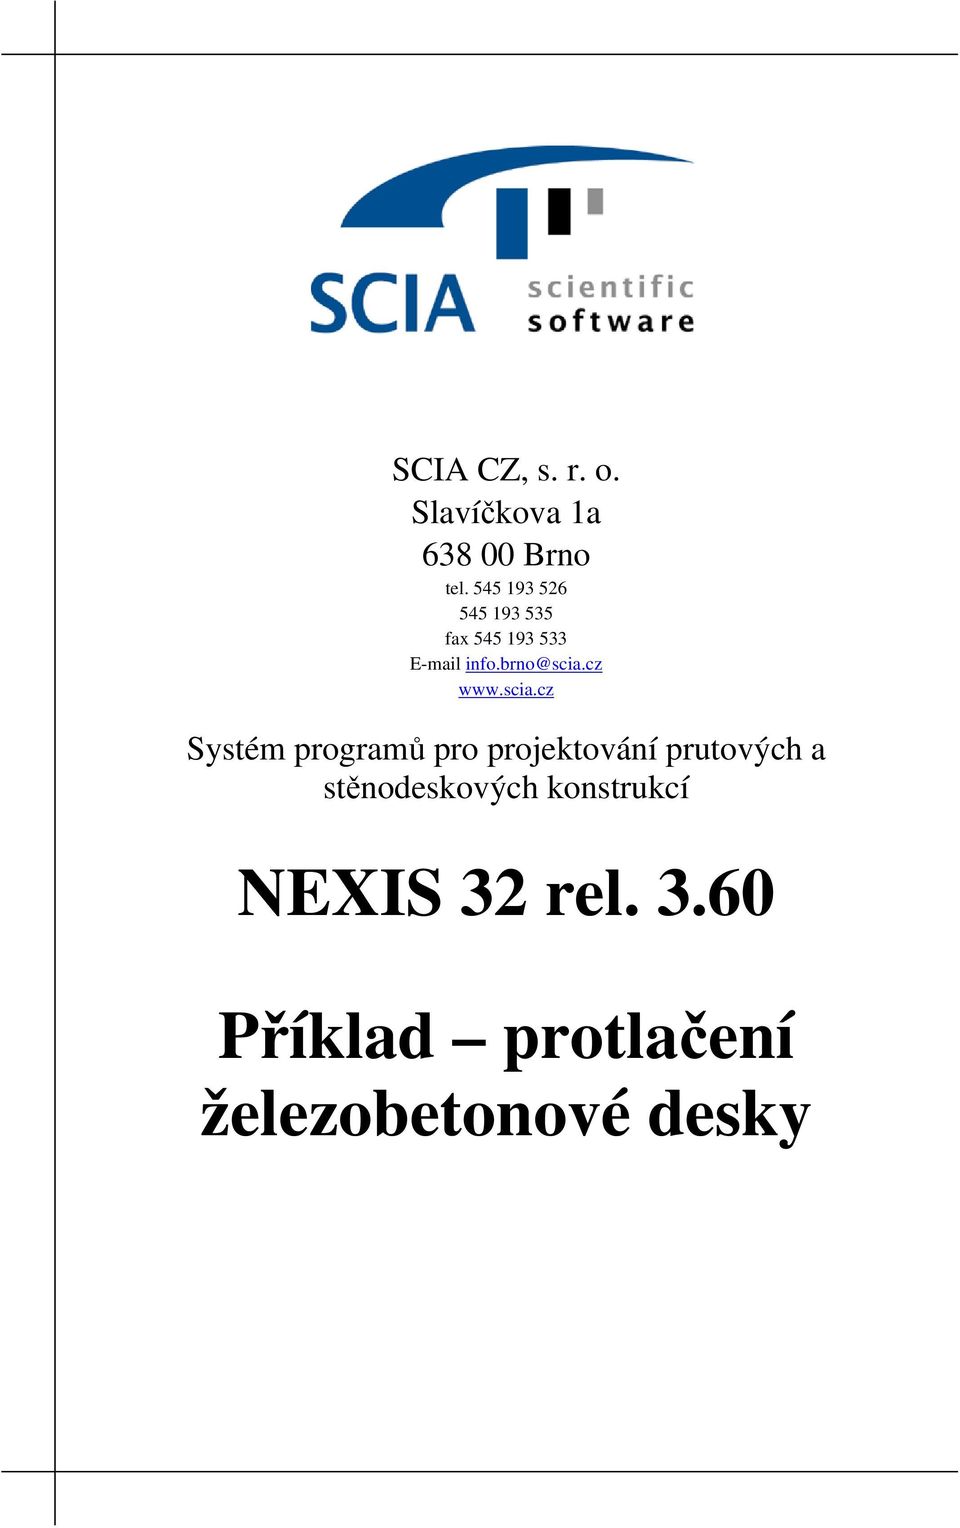 cz www.scia.